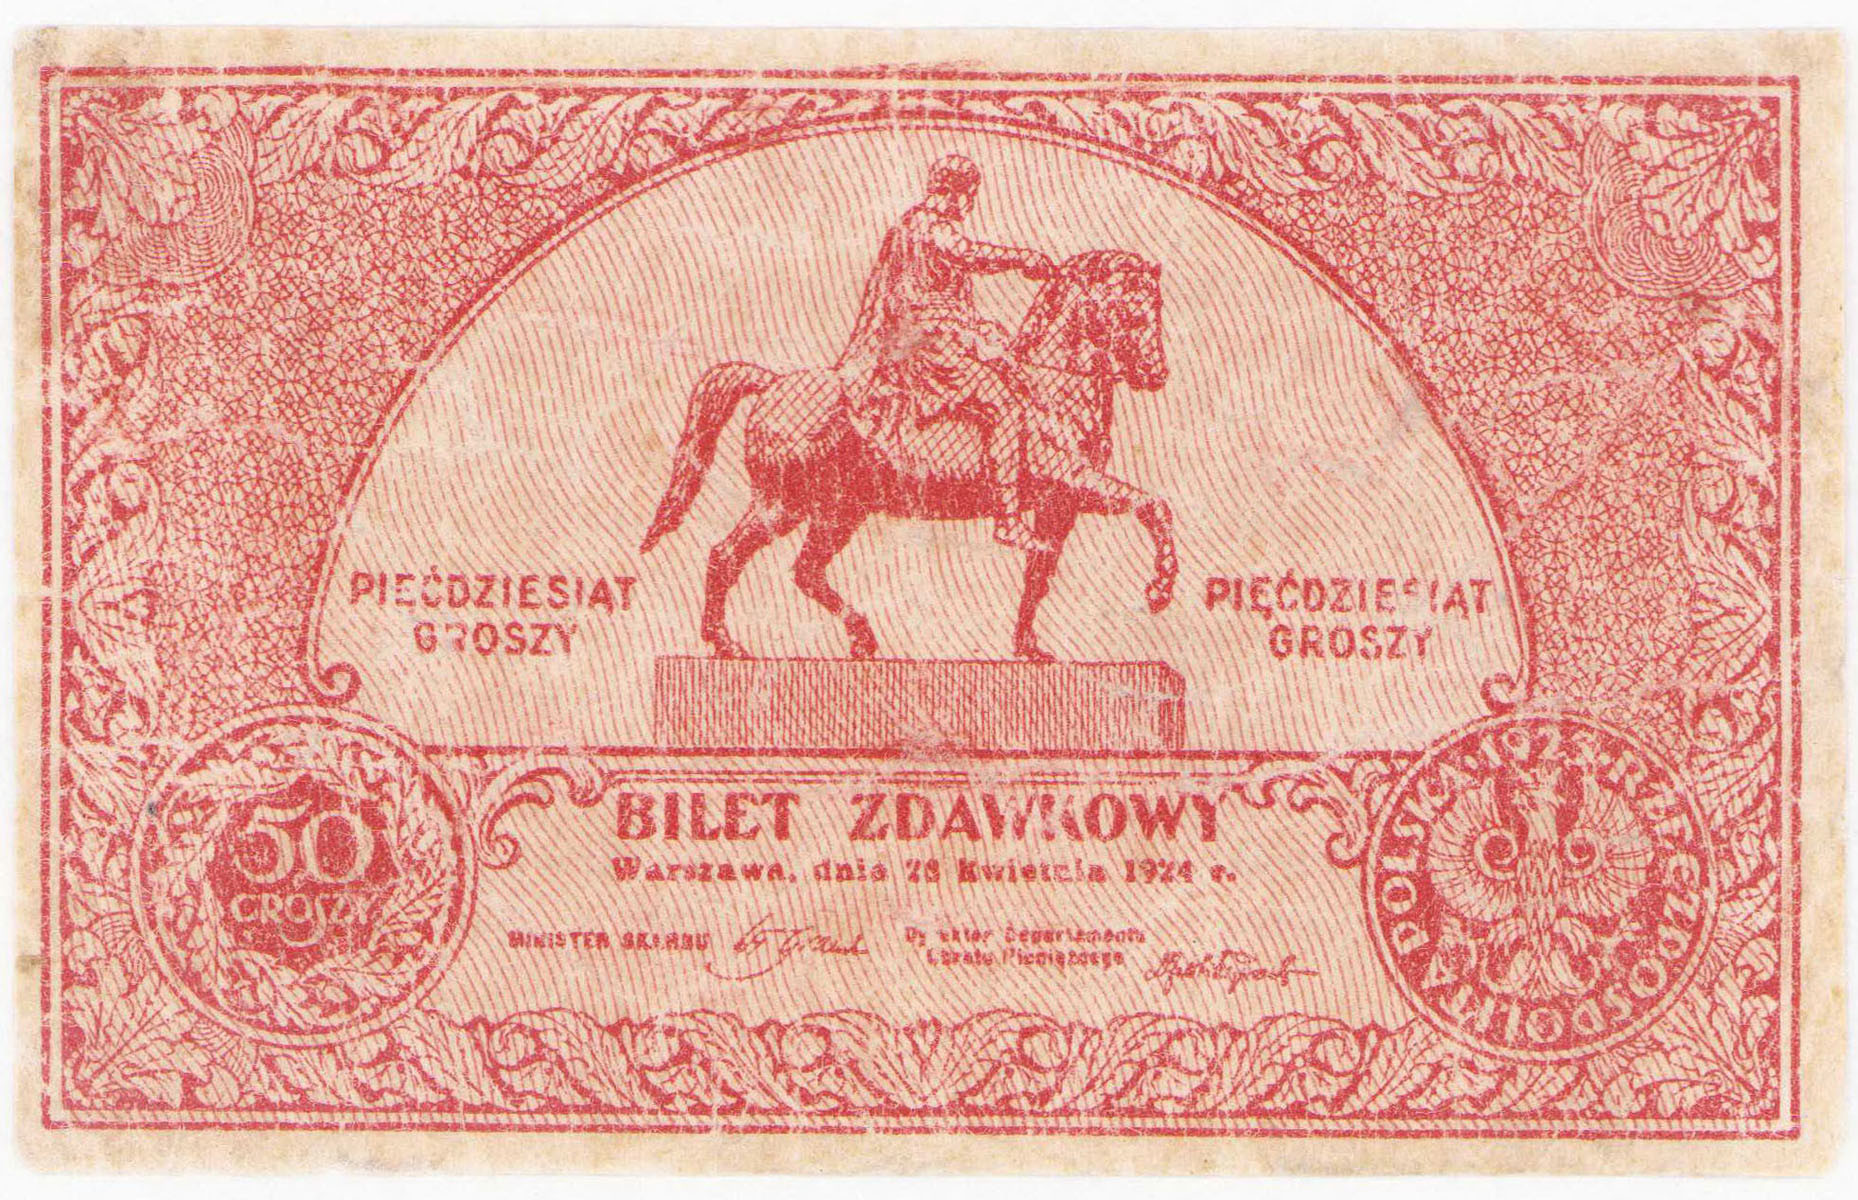 Bilet zdawkowy. 50 groszy 1924